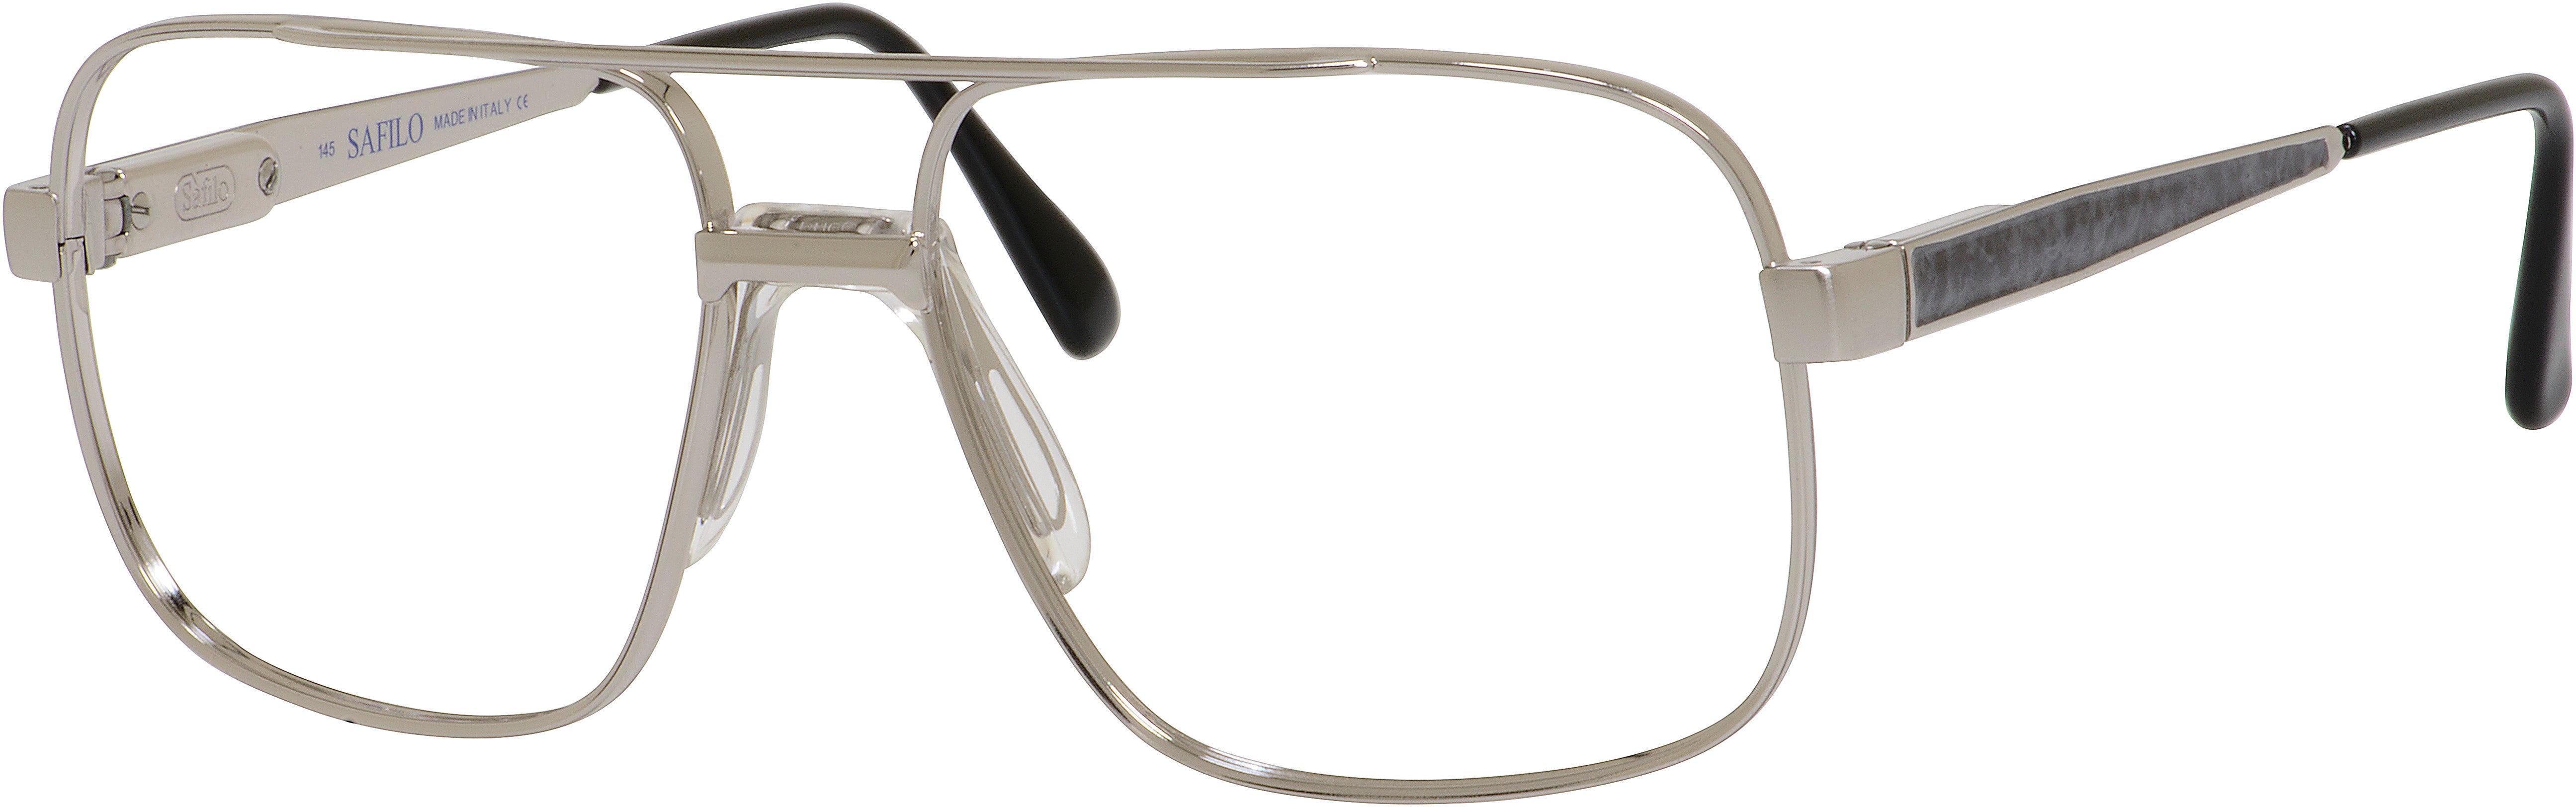  Elasta 3055 Rectangular Eyeglasses 0L32-0L32  Gray Marble (00 Demo Lens)